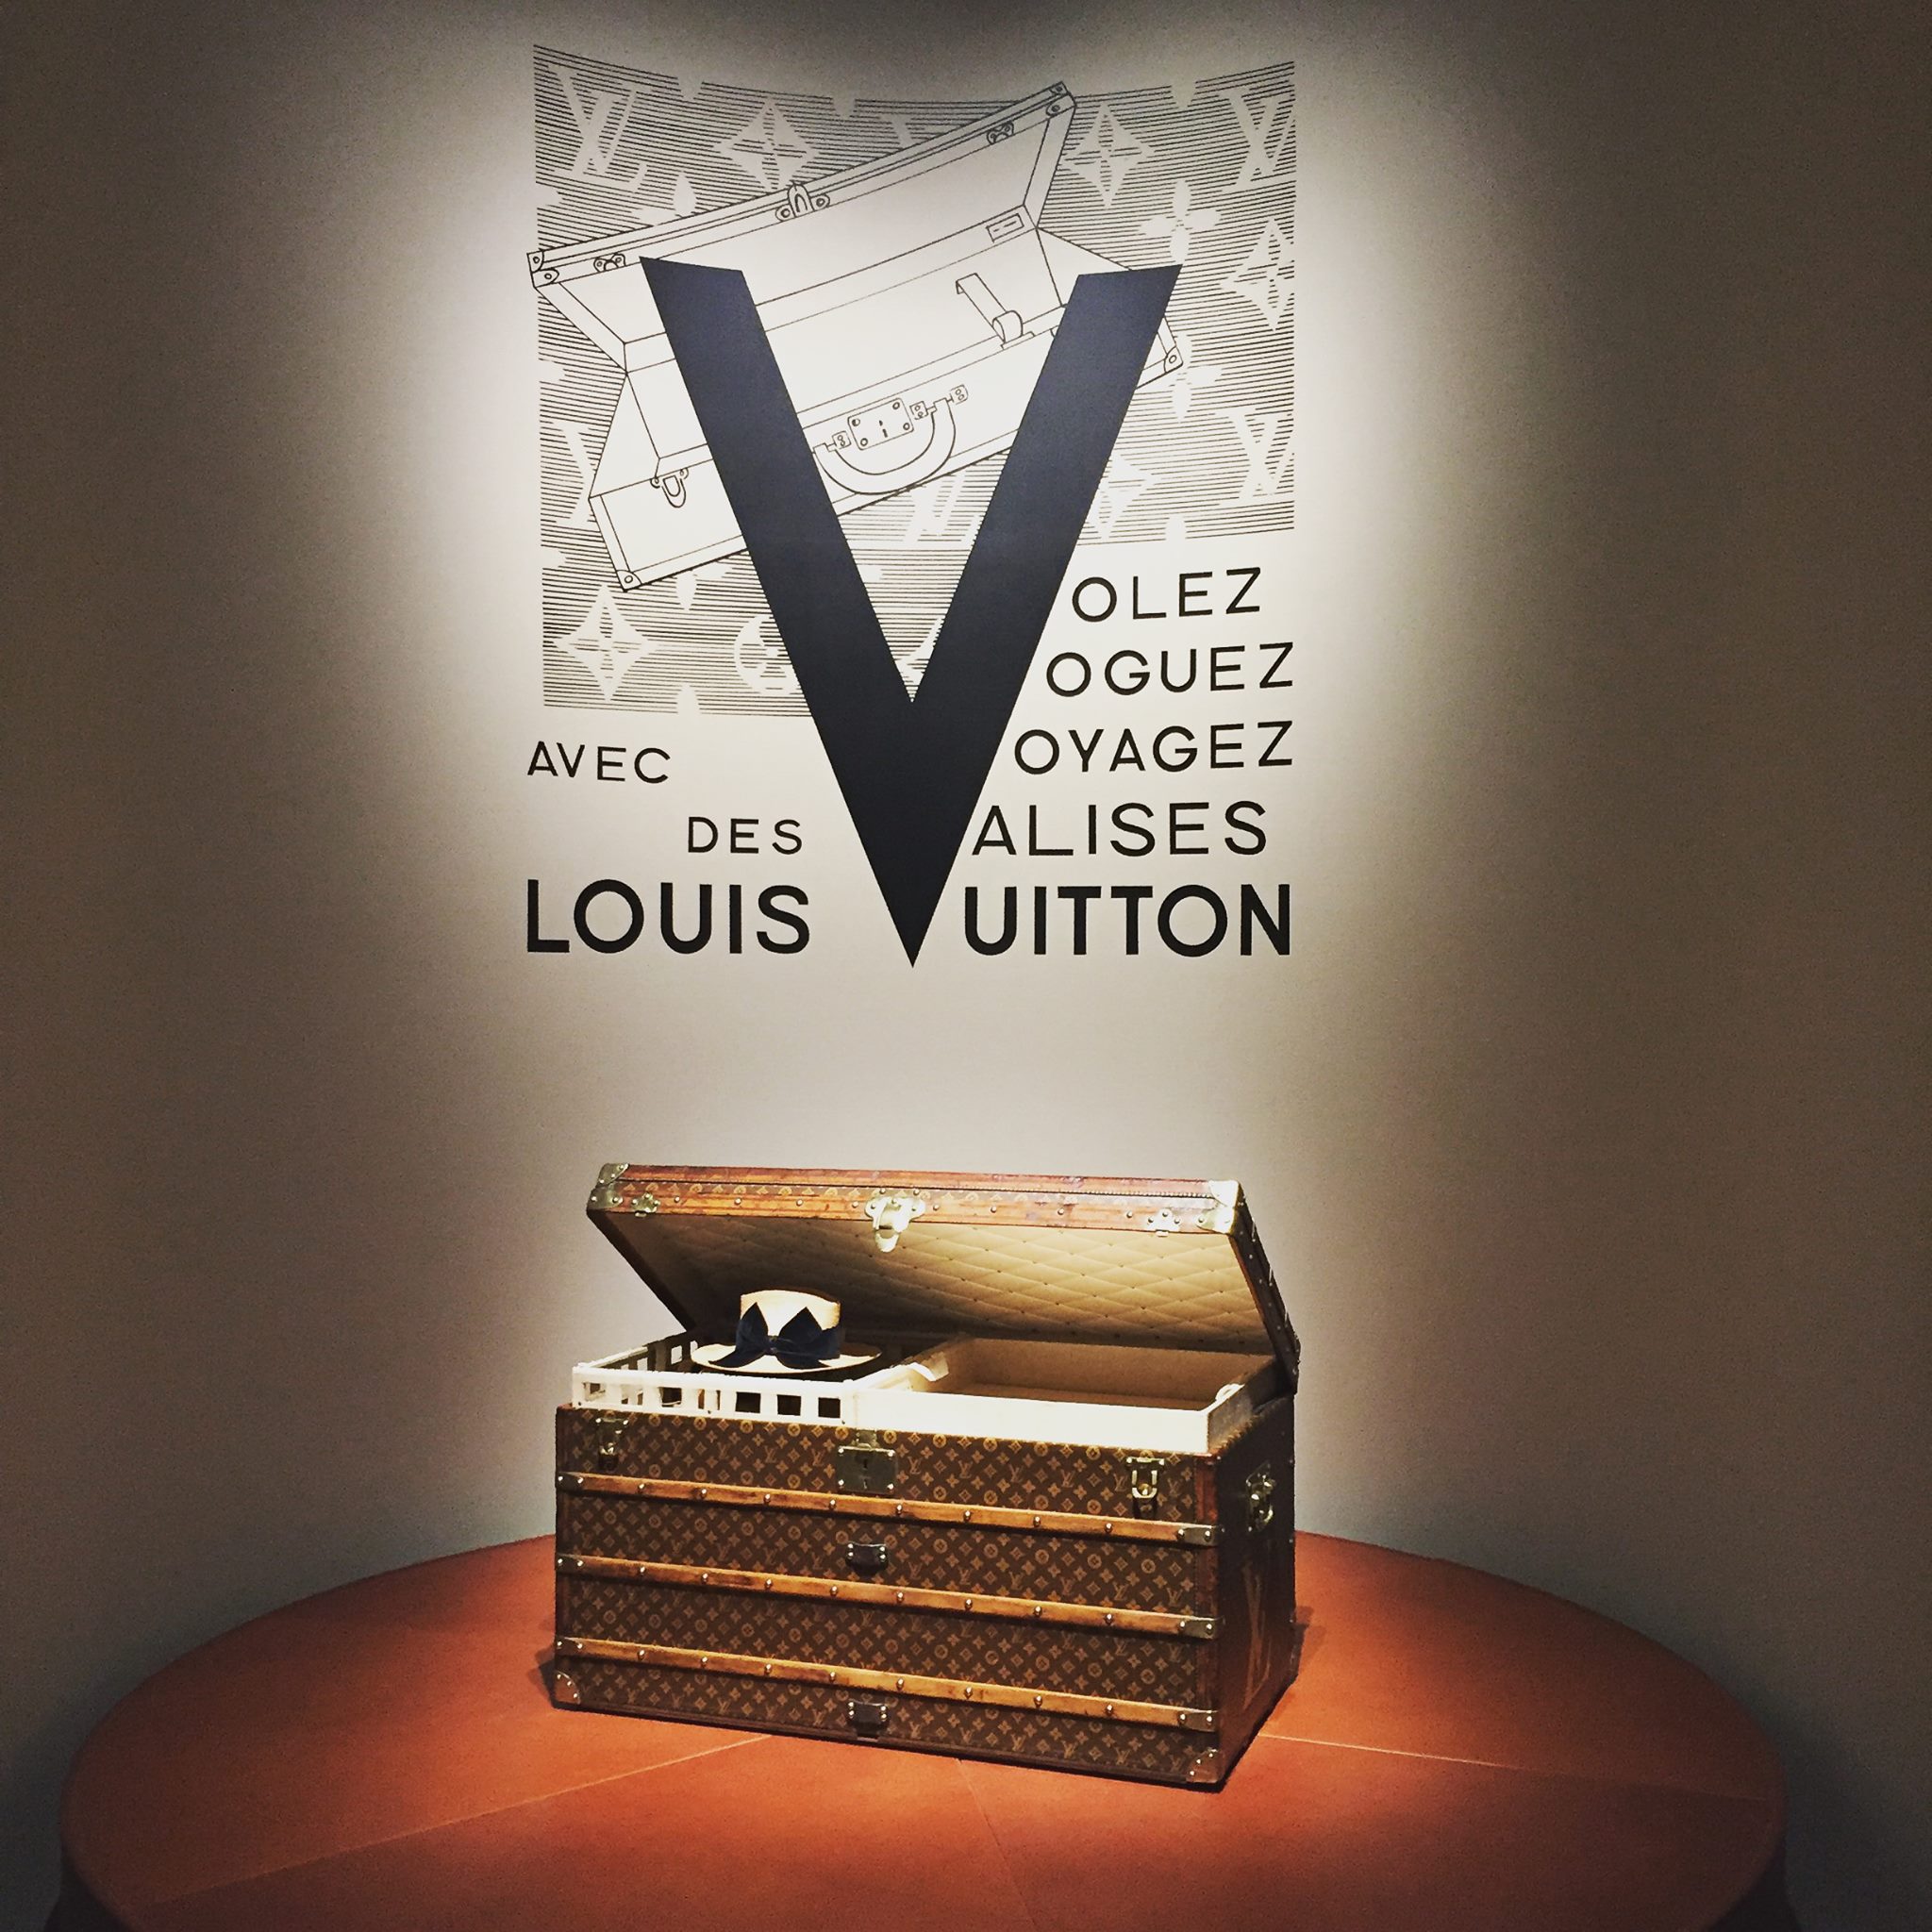 Volez Voguez Voyagez - Louis Vuitton catalogue, French version